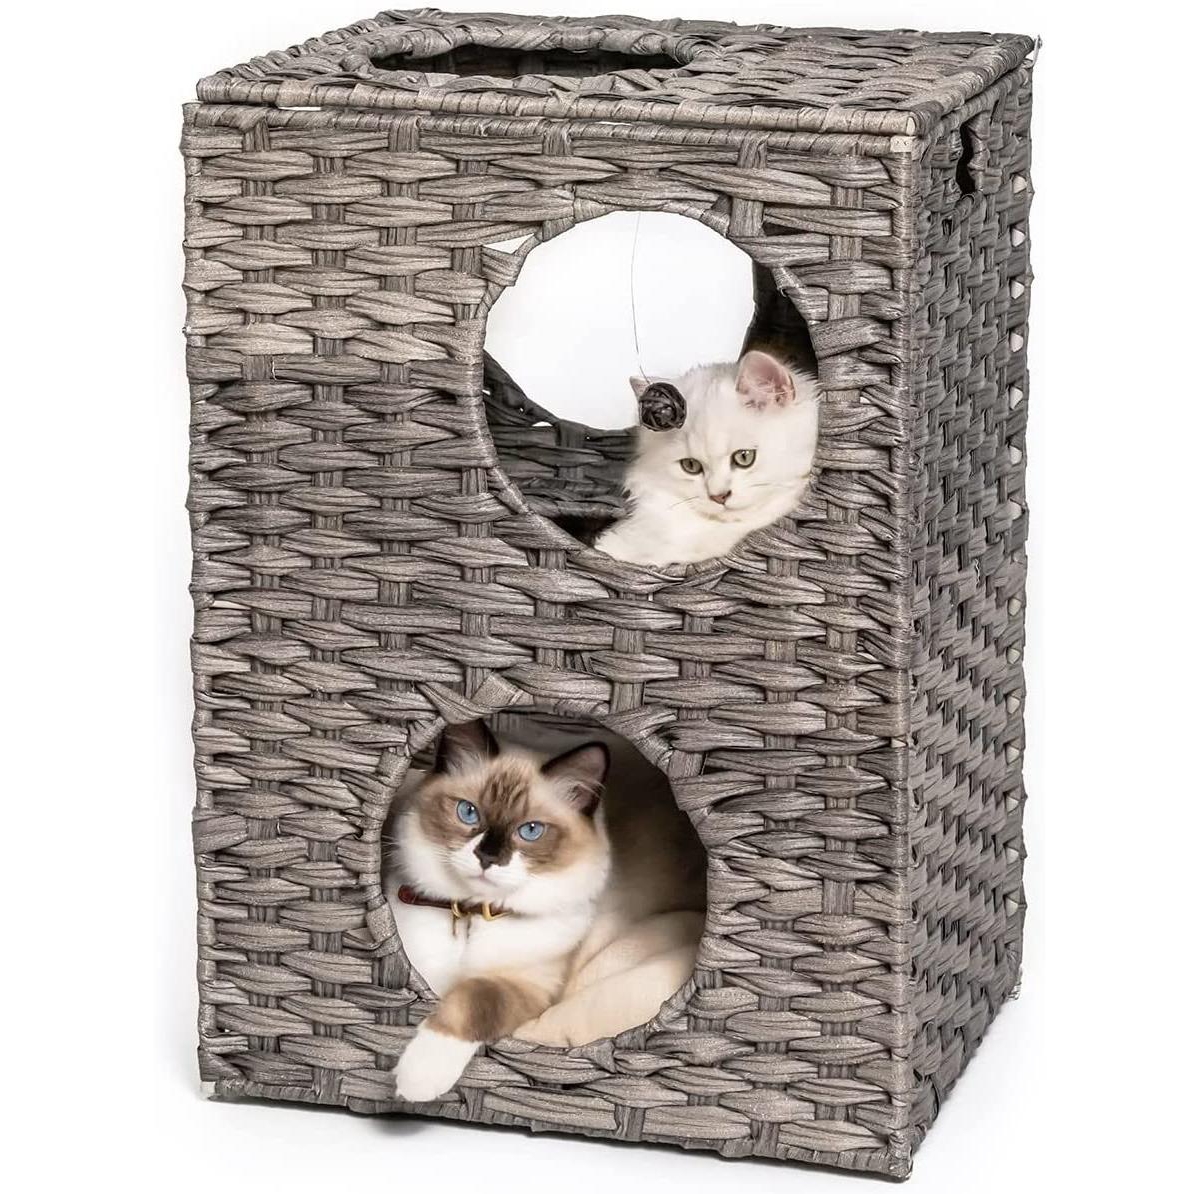 Cat House - Wicker Cat Bed for Indoor Cats - Woven Rattan Cat Condos - Outdoor Pet Furniture - Grey